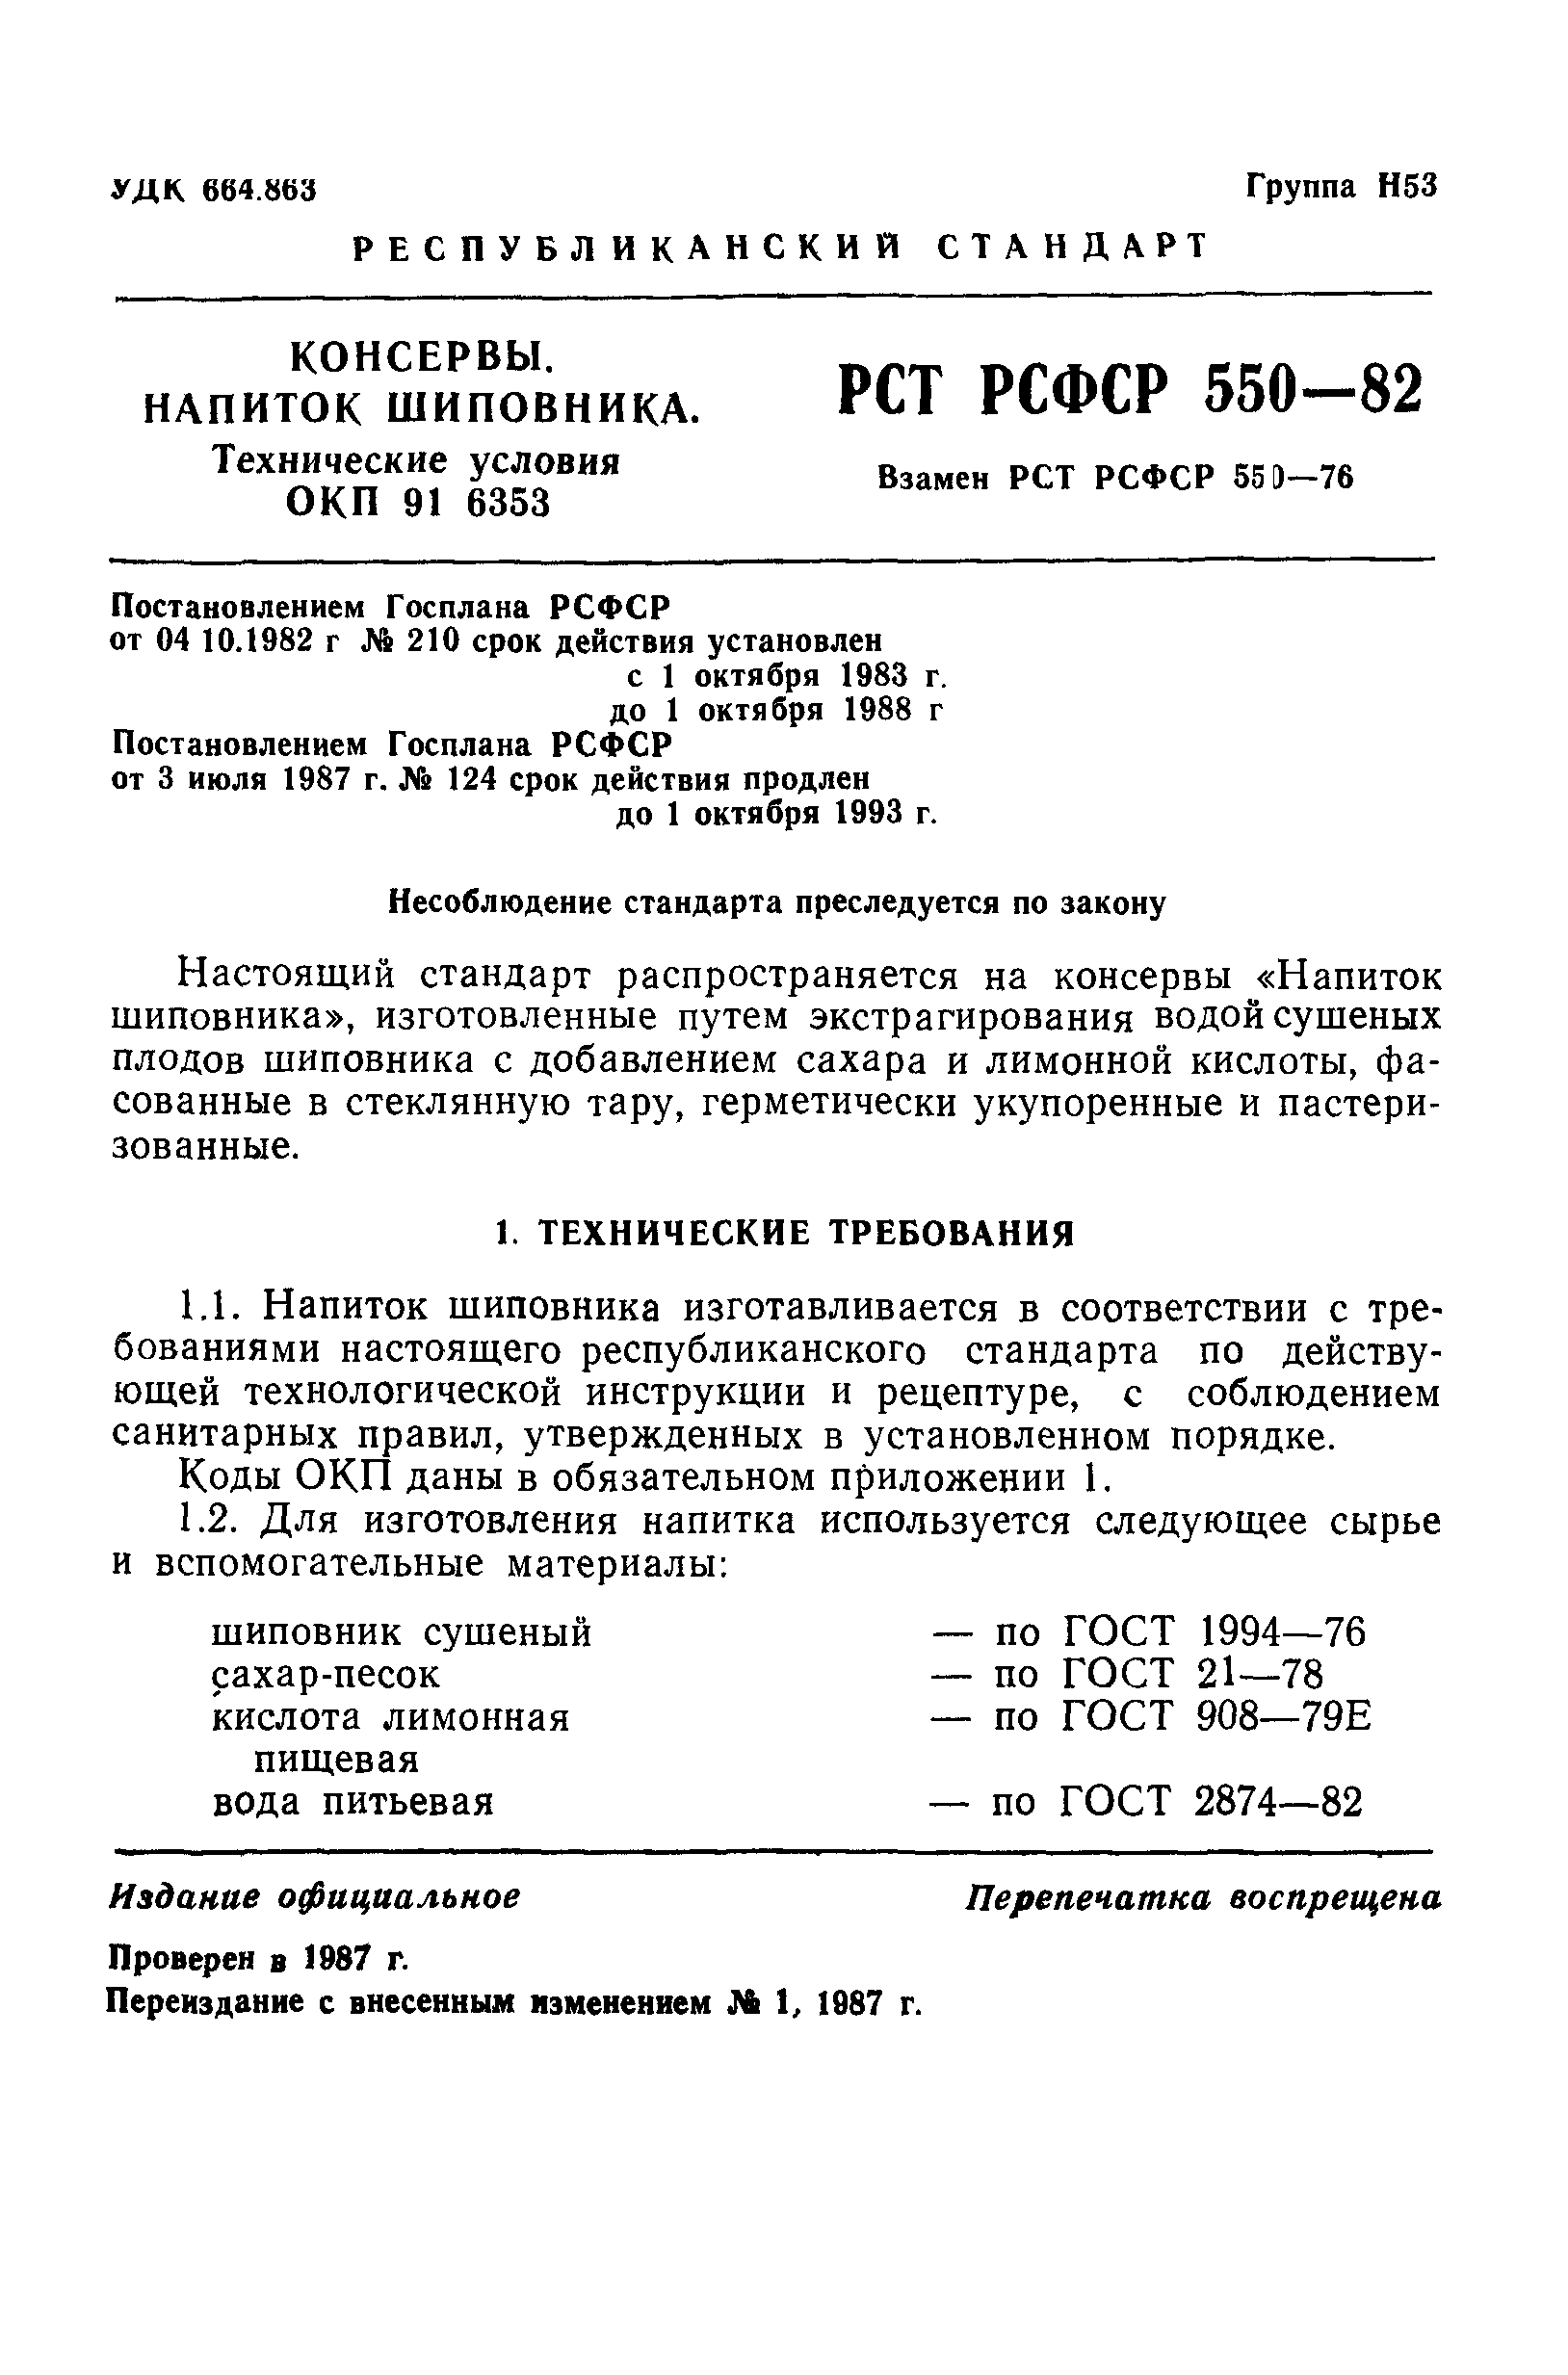 РСТ РСФСР 550-82